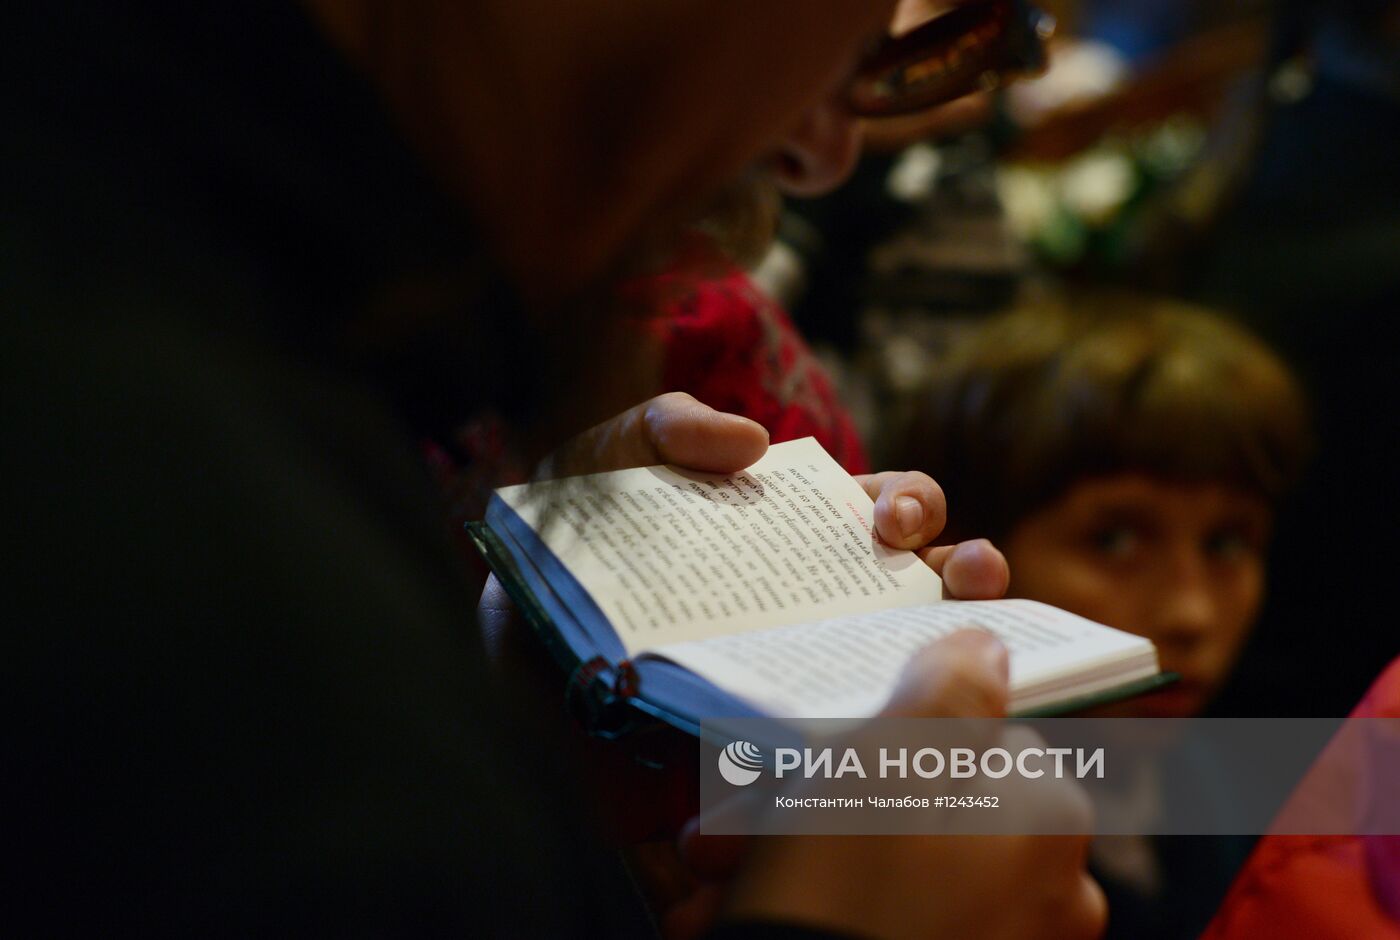 Божественная литургия в Софийском соборе Великого Новгорода